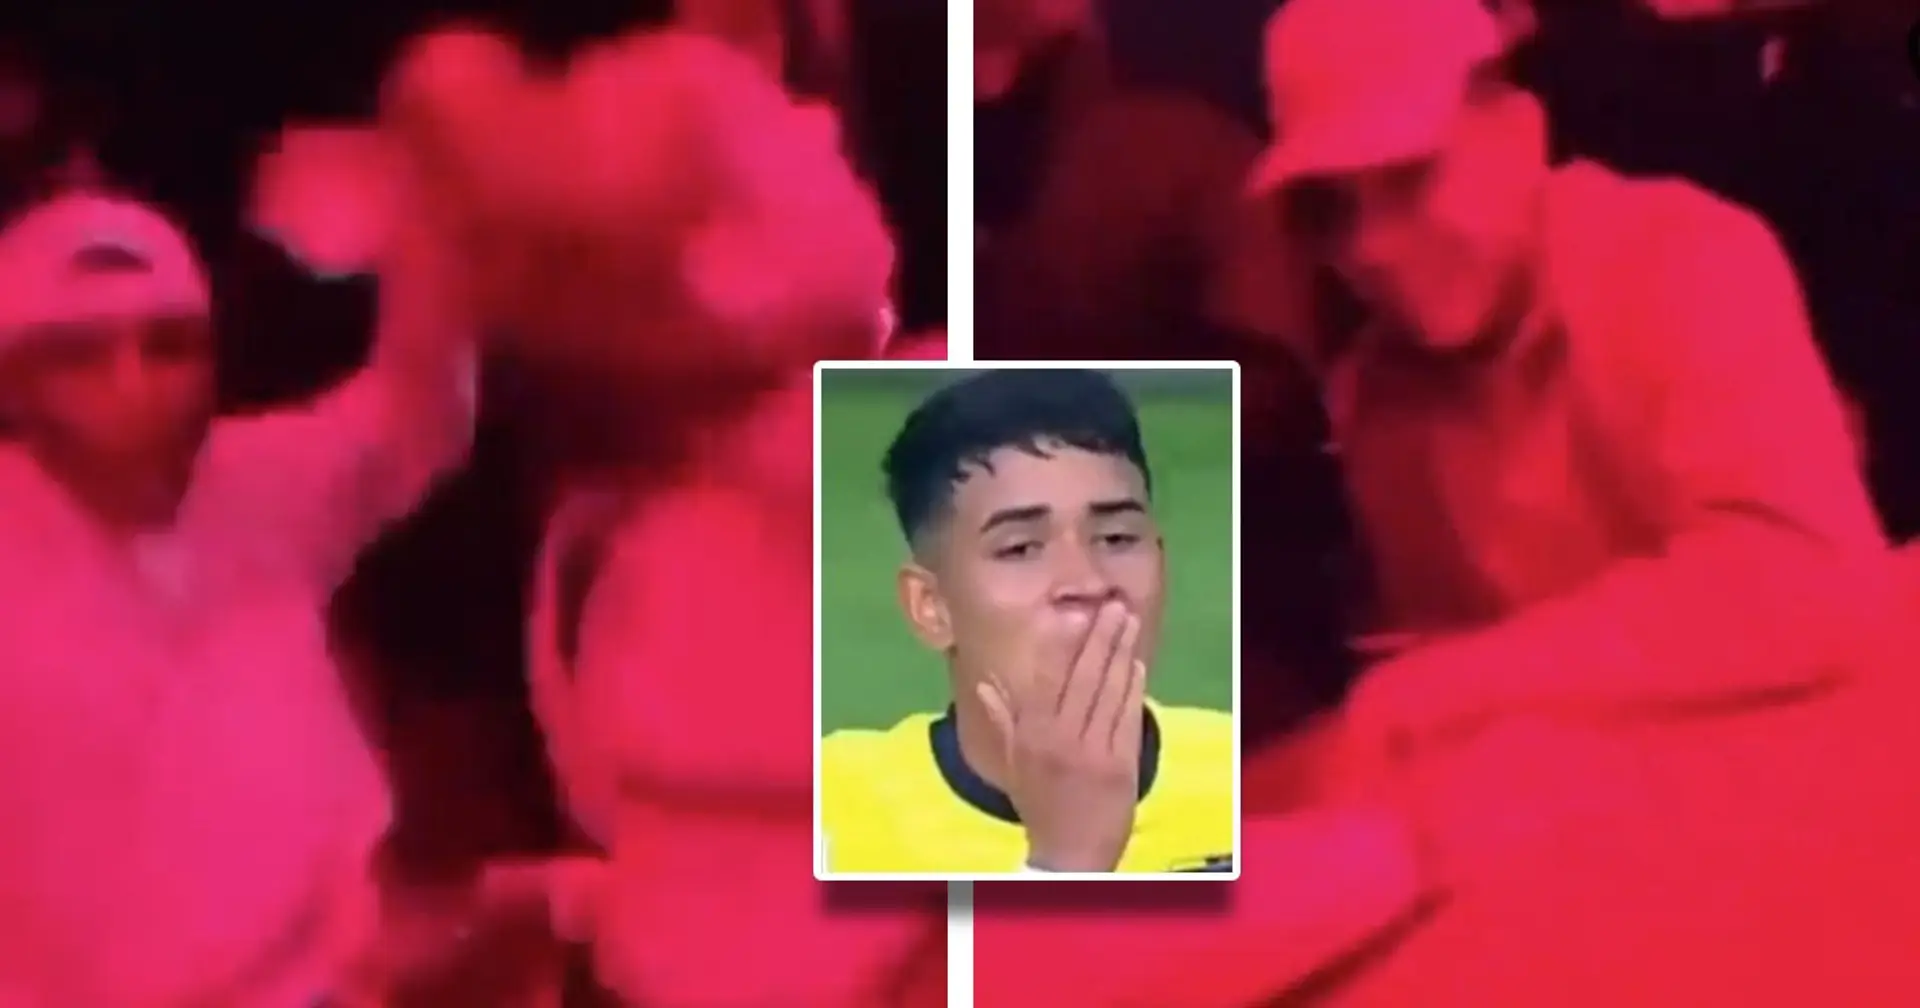 Il prodigio del Chelsea Kendry Paez, presumibilmente tra i giocatori dell'Ecuador, è stato filmato in un club mentre lanciava soldi ai ballerini